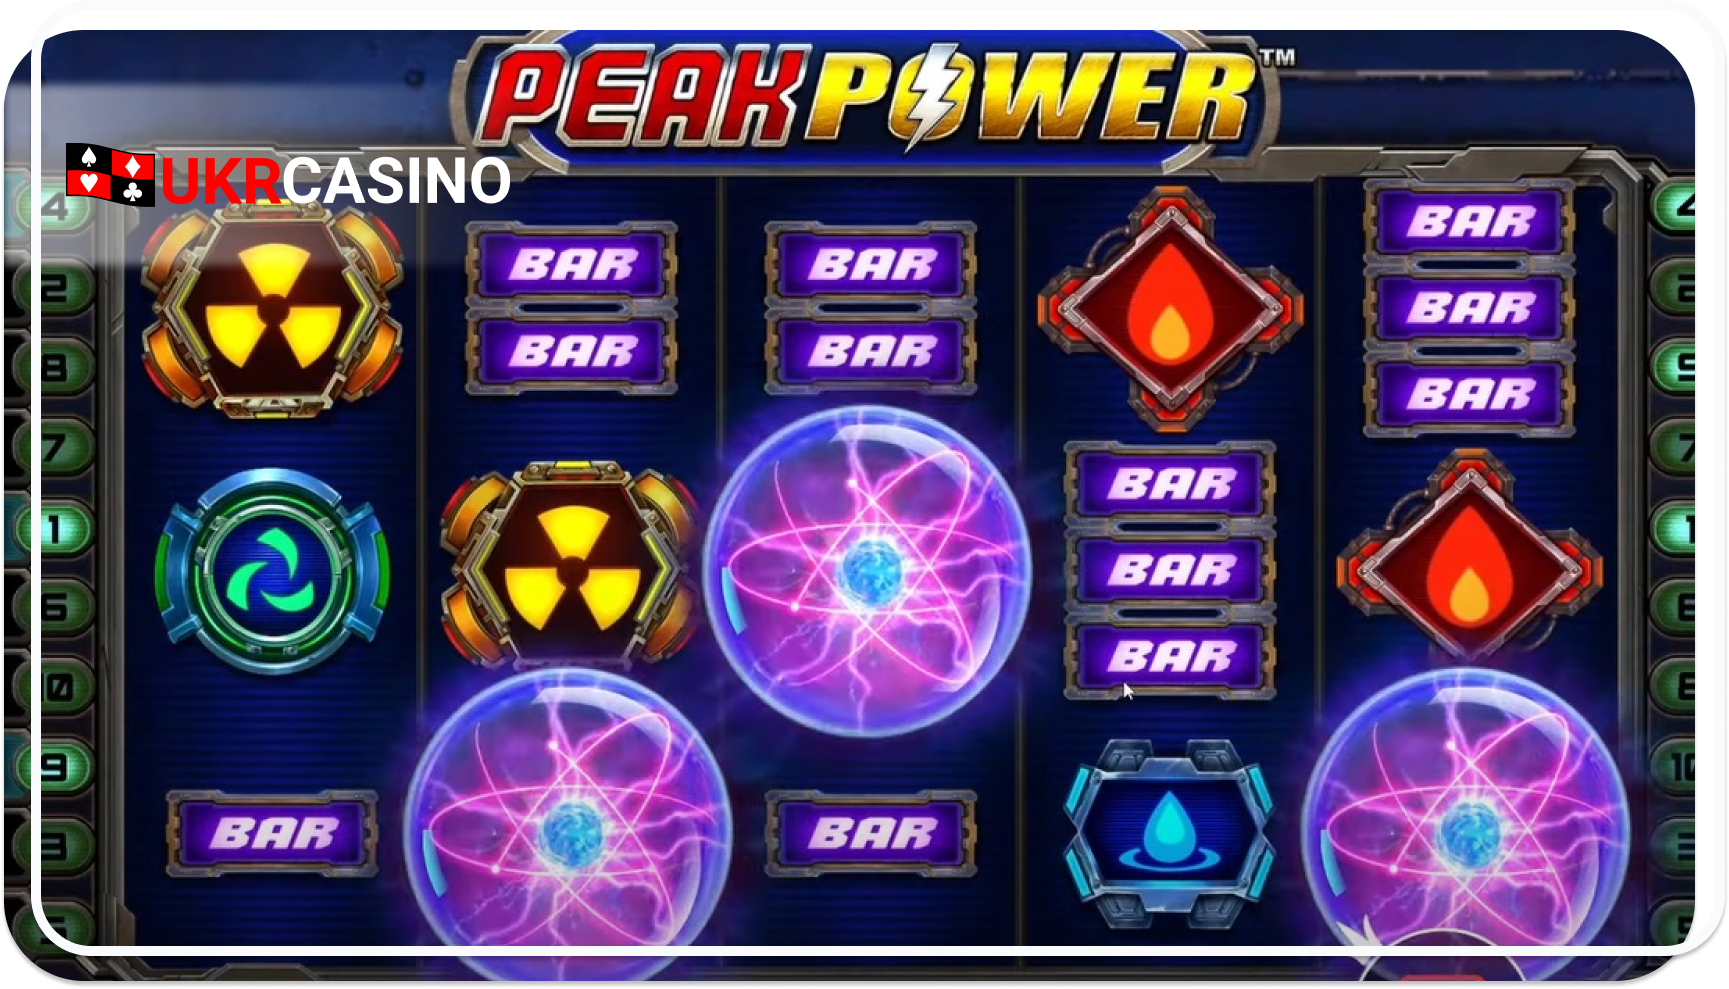 Peak Power - Pragmatic Play bonus